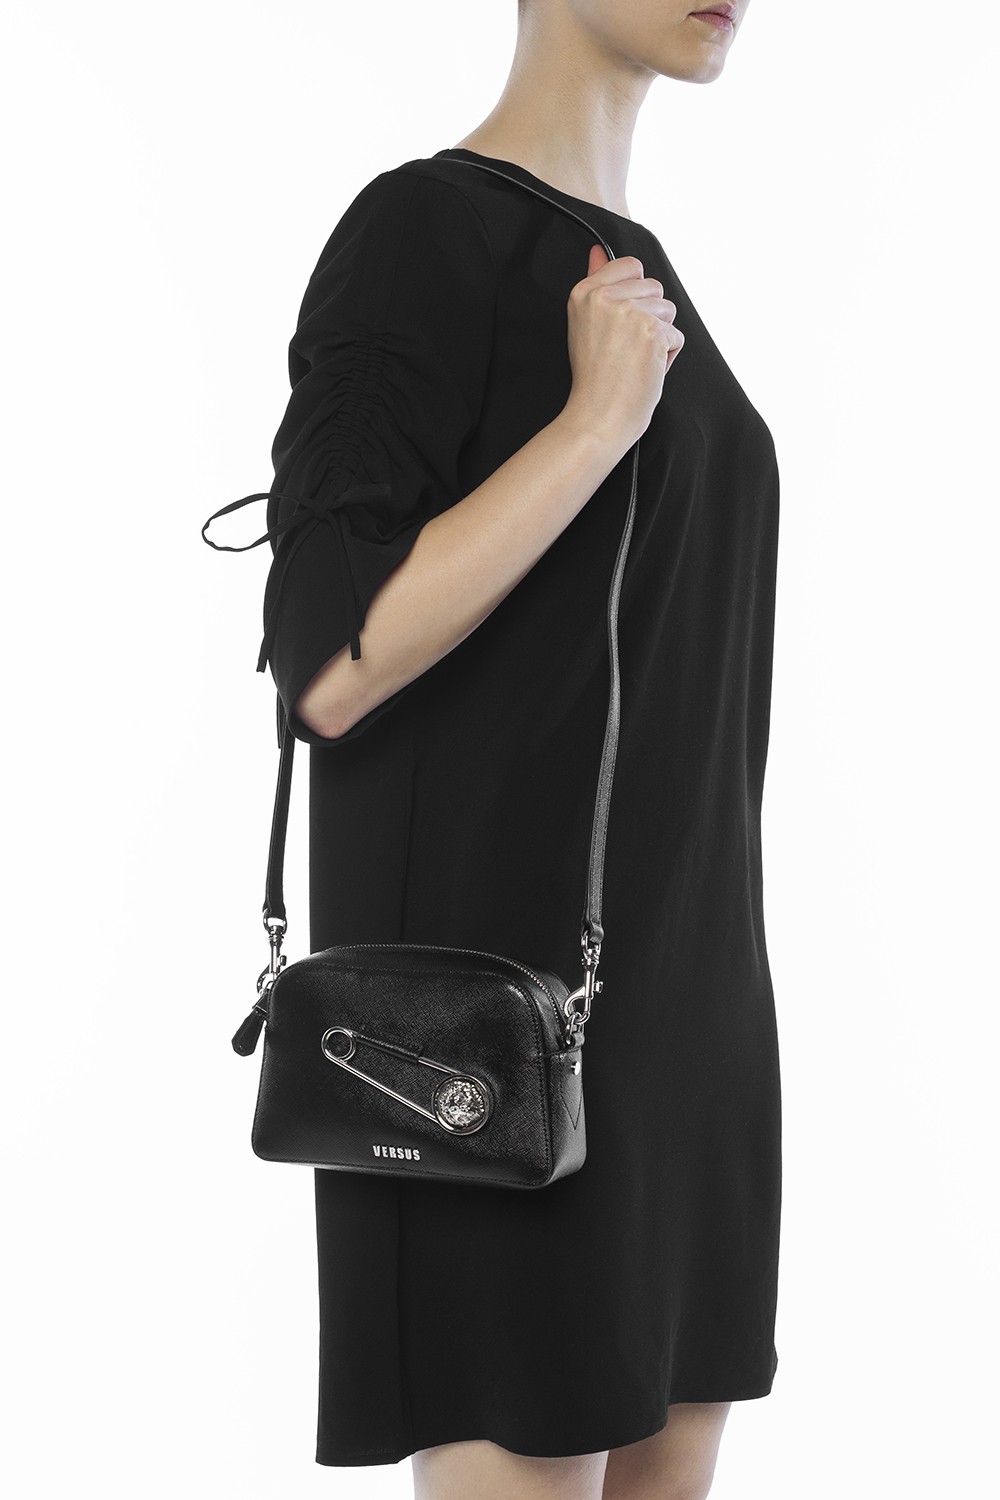 Safety Pin' shoulder bag Versace Versus 